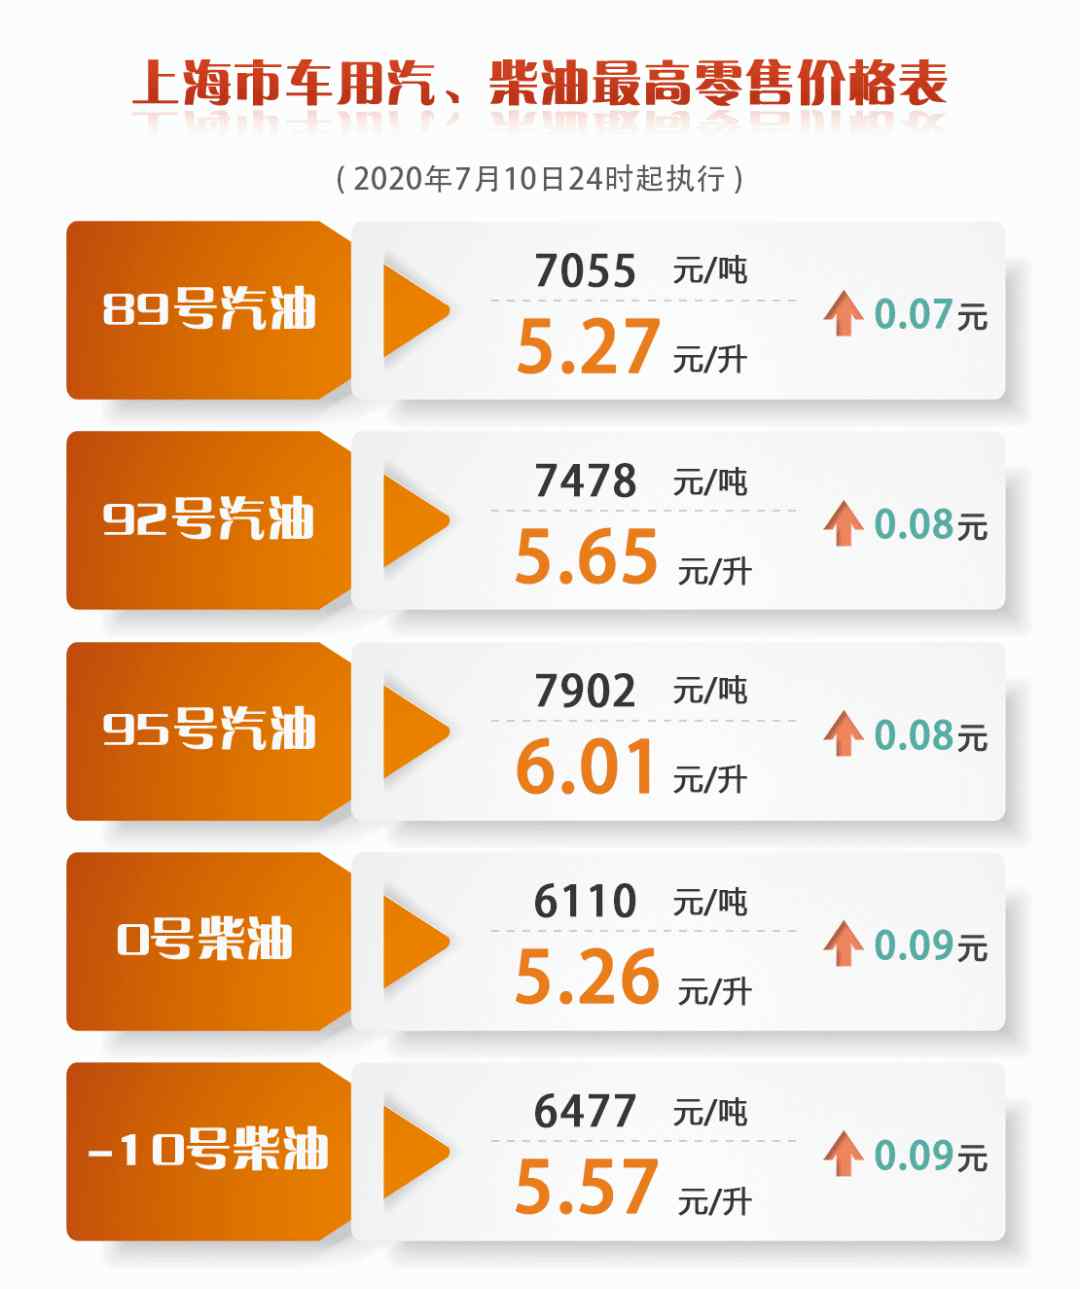 上海今日油价 上海成品油价今天零点起上调